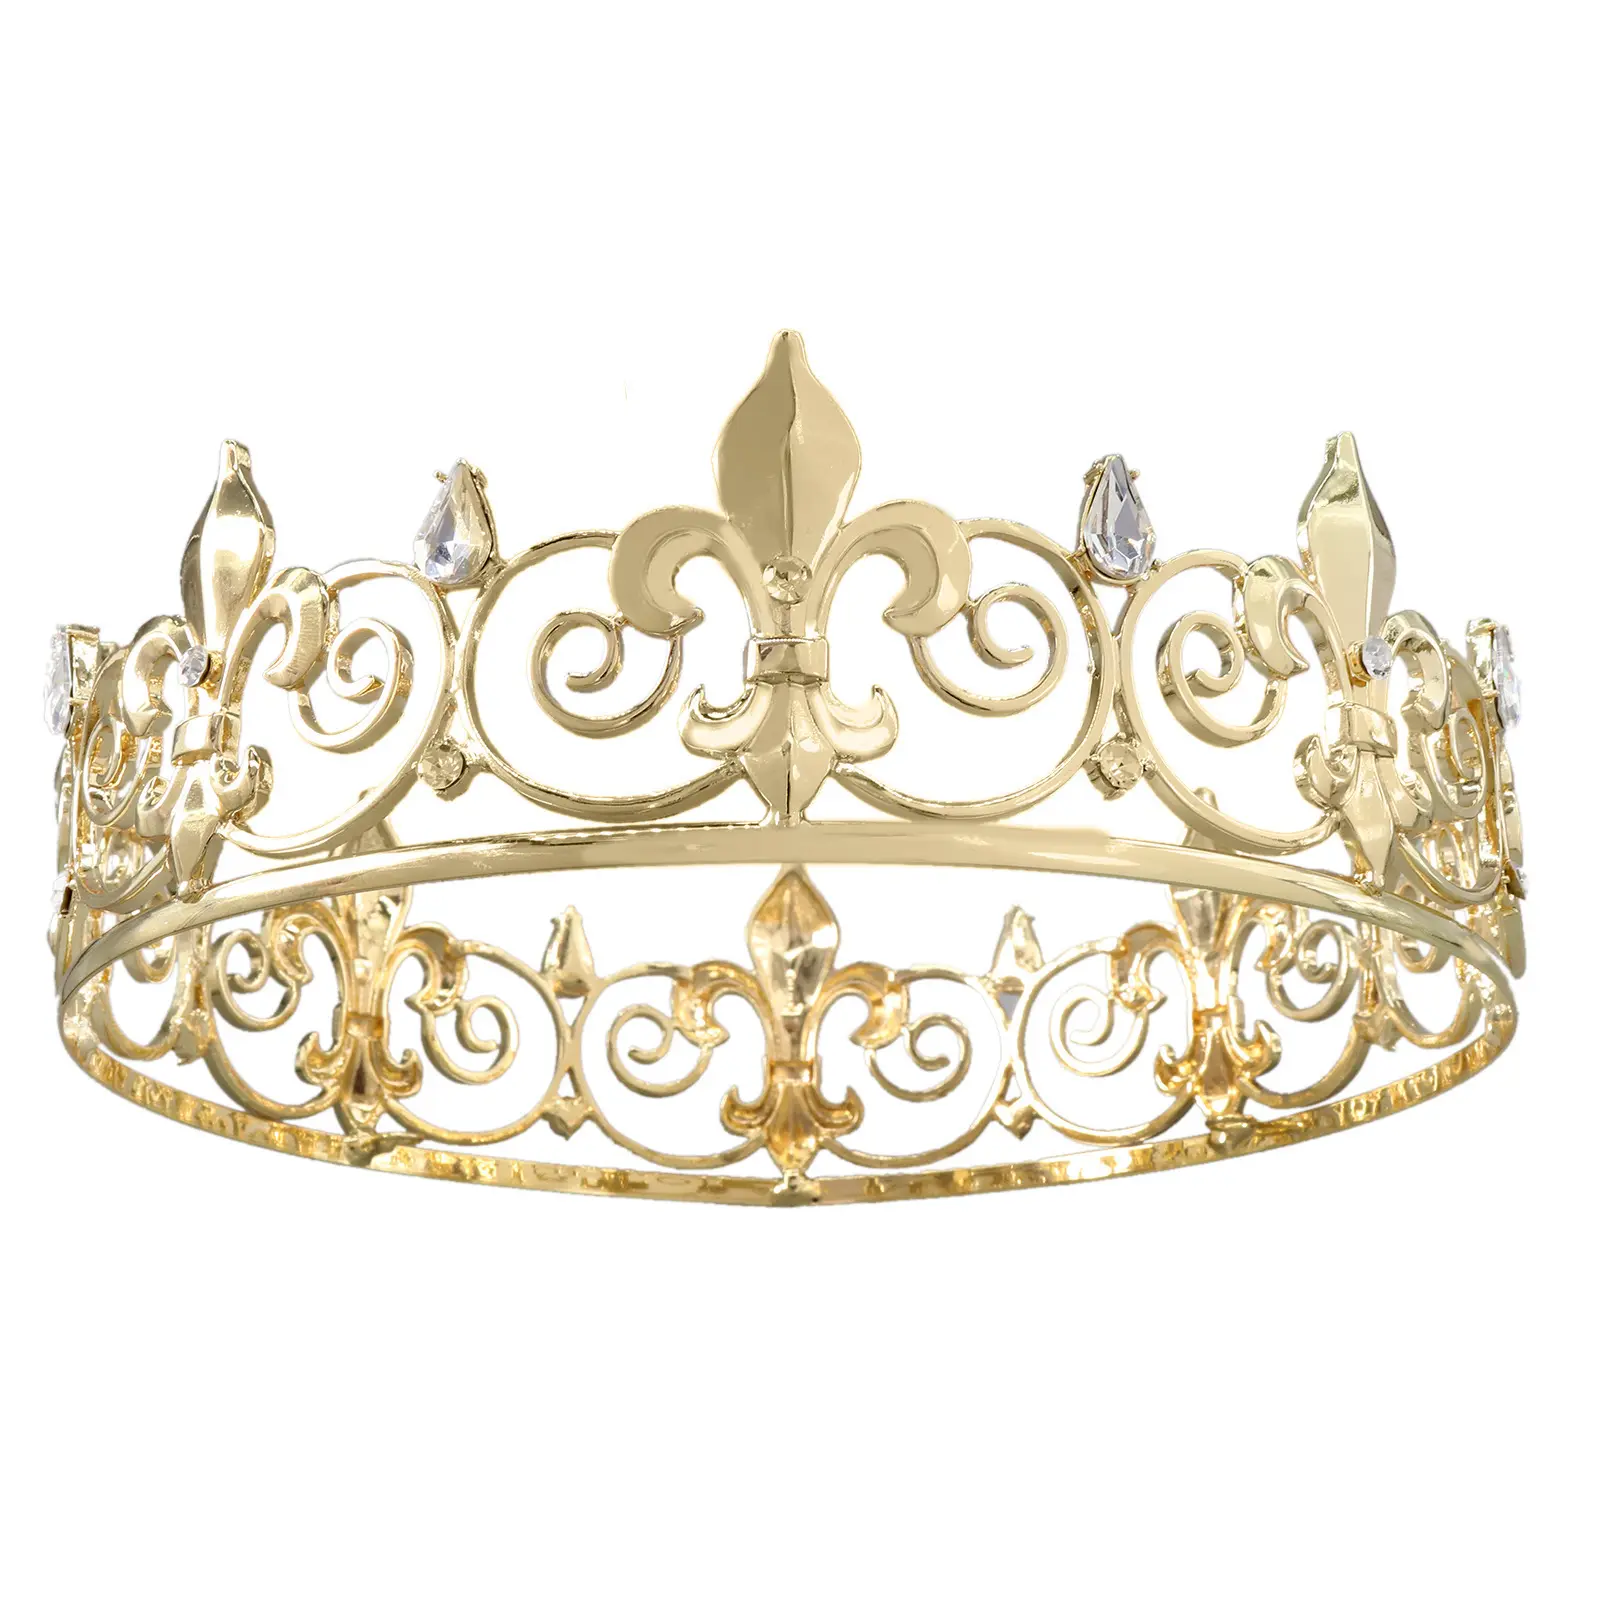 Directo de fábrica de lujo de diamantes de imitación nupcial Eseres plata hombres Tiara redonda completa Fleur De Lis Prom King Crown para cumpleaños boda